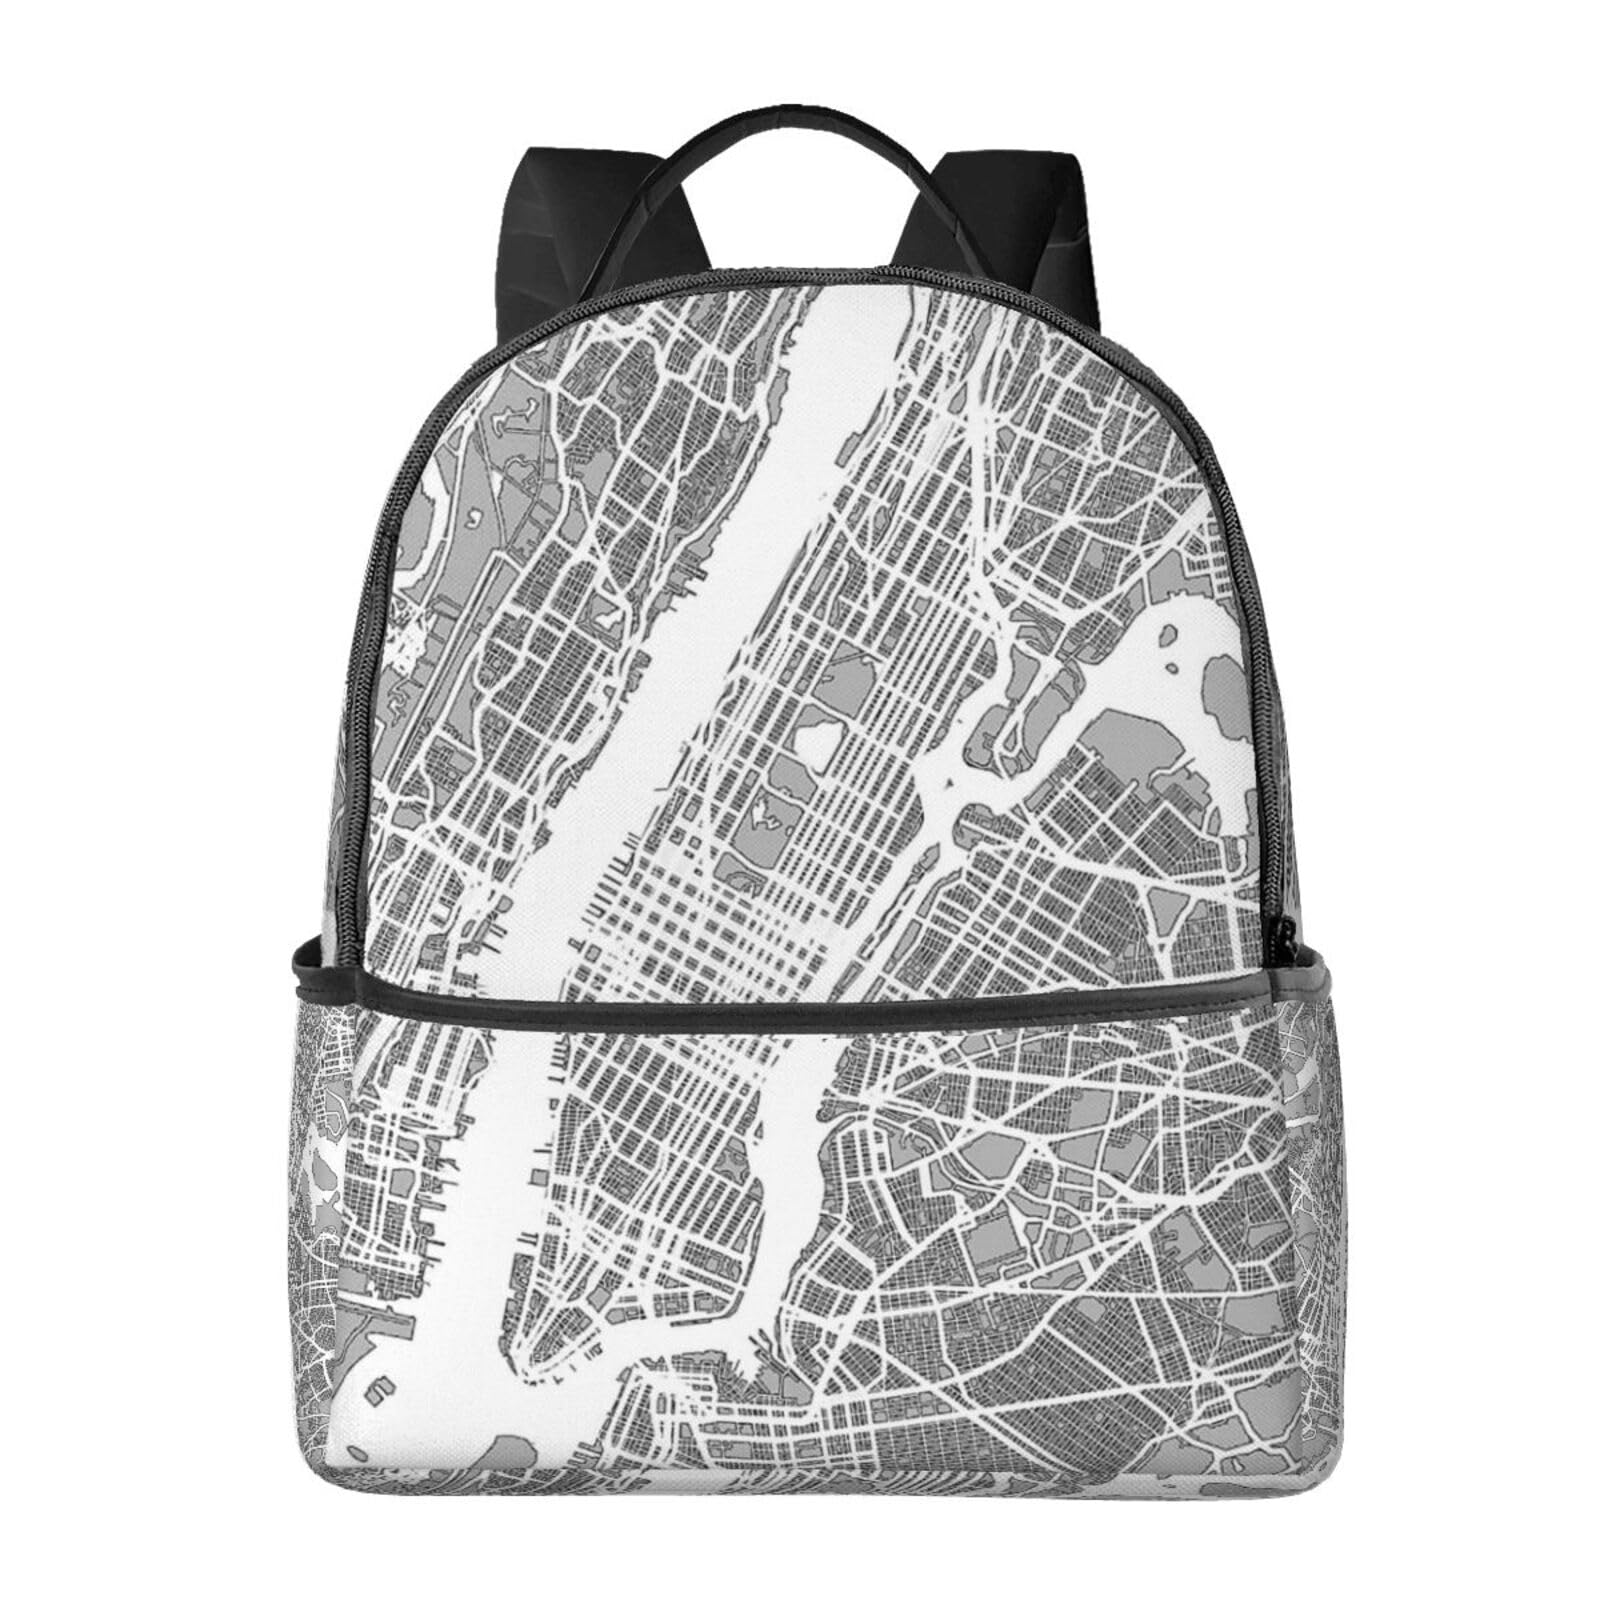 送料無料EVANEM Laptop Backpack Lightweight Travel Backpack Shoulders Bag New York City Map Printed For Travel Men Women